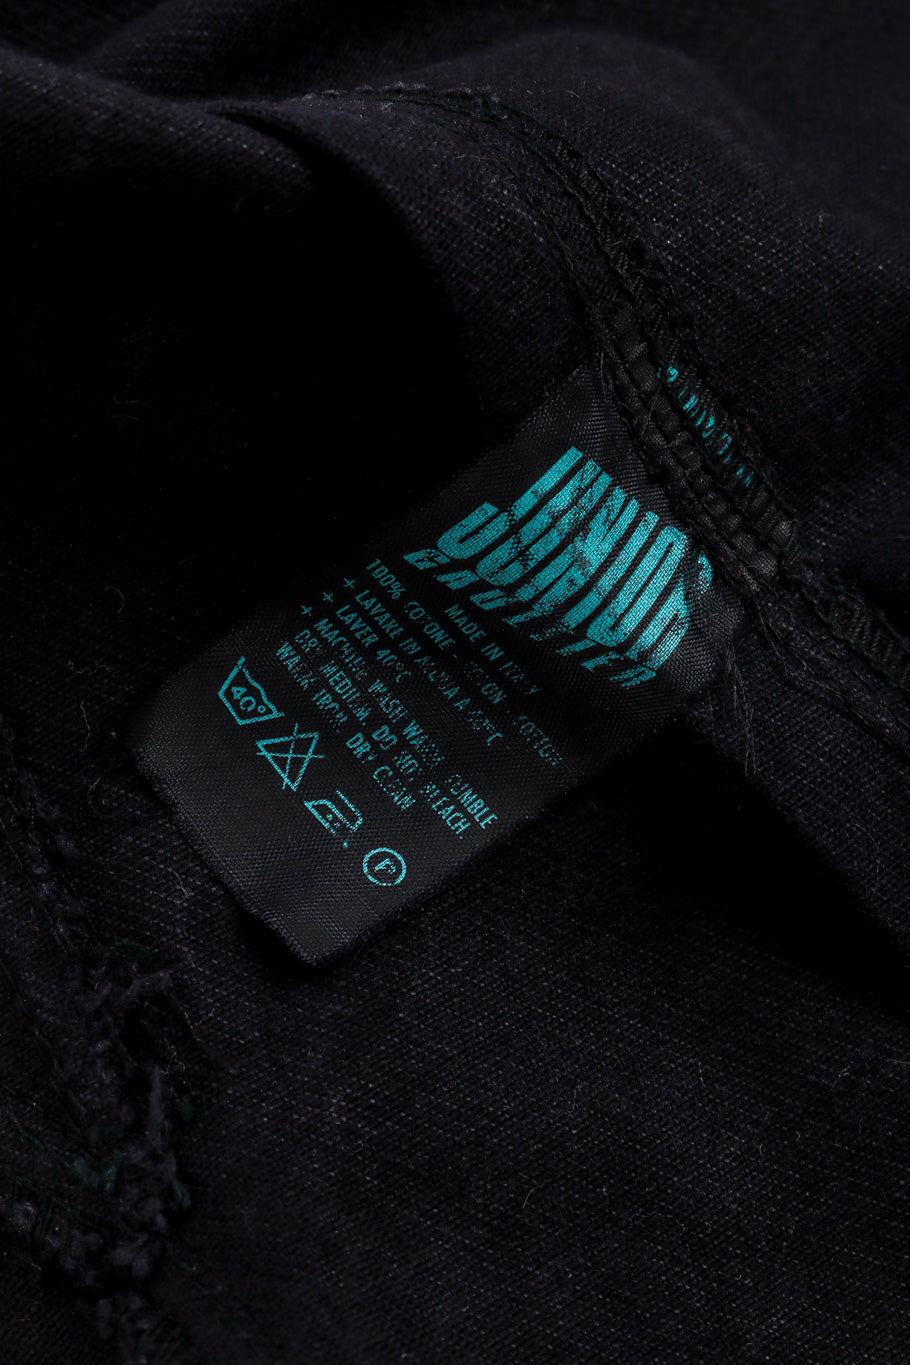 Junior Gaultier Denim Peplum Jacket care label closeup @recessla